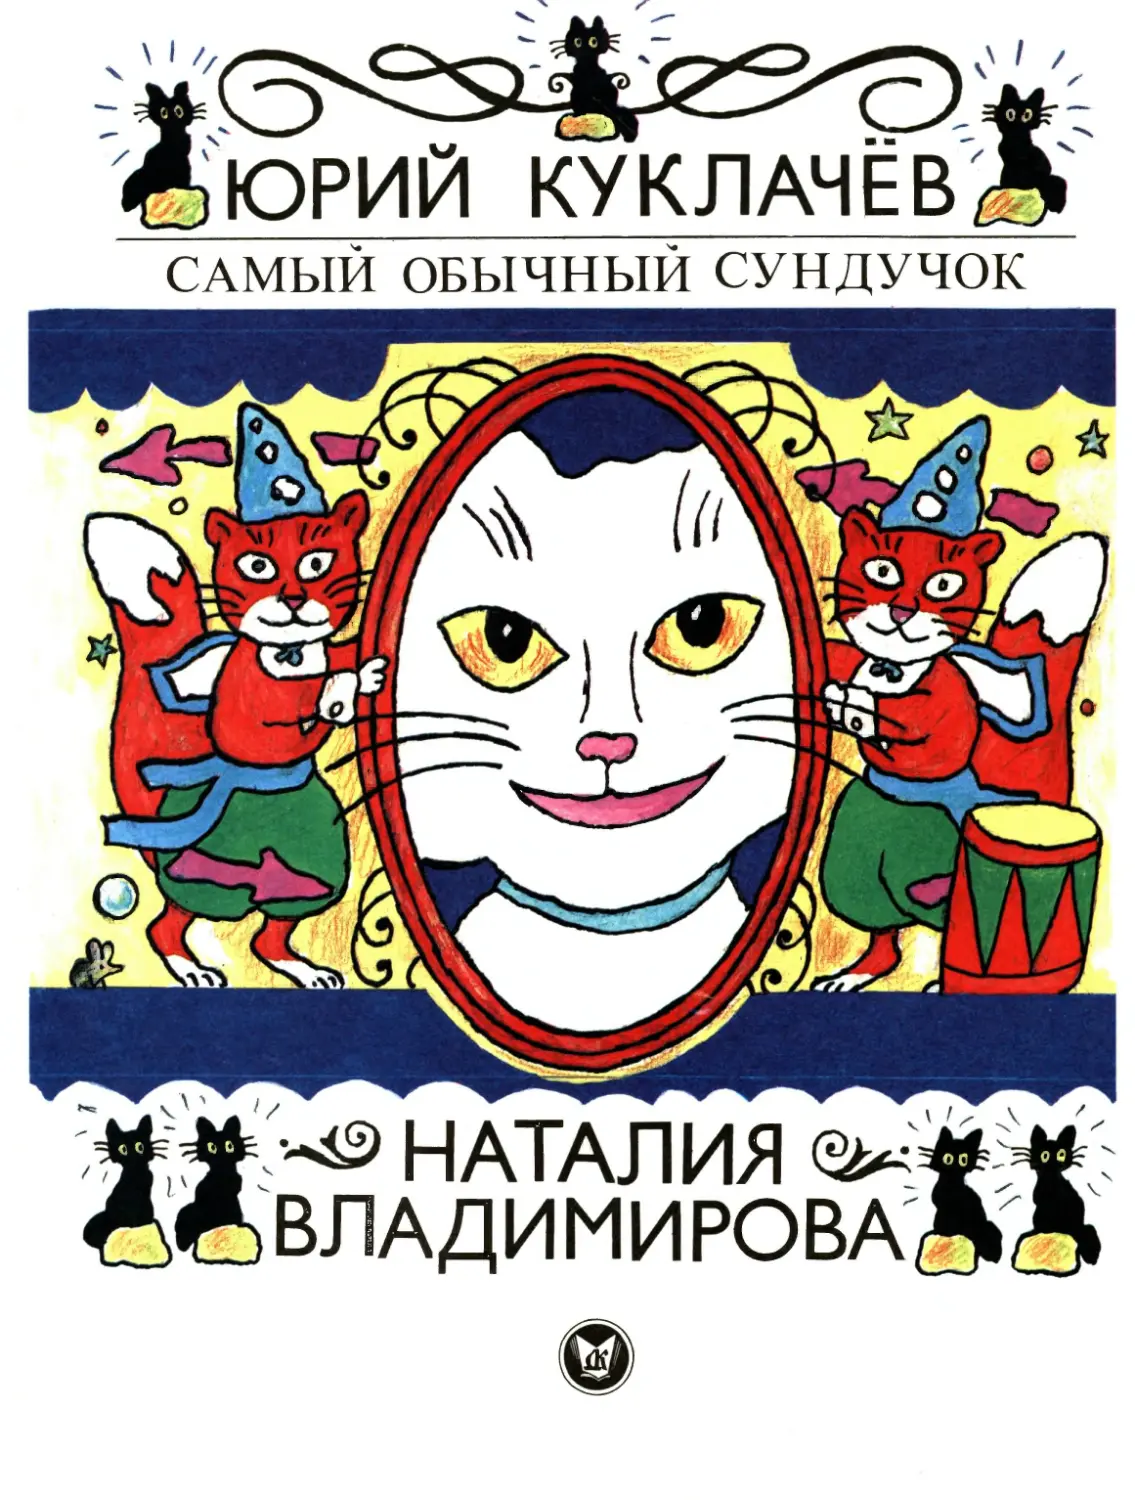 Куклачёв Ю.Д., Владимирова Н.И. Самый обычный сундучок. 1996